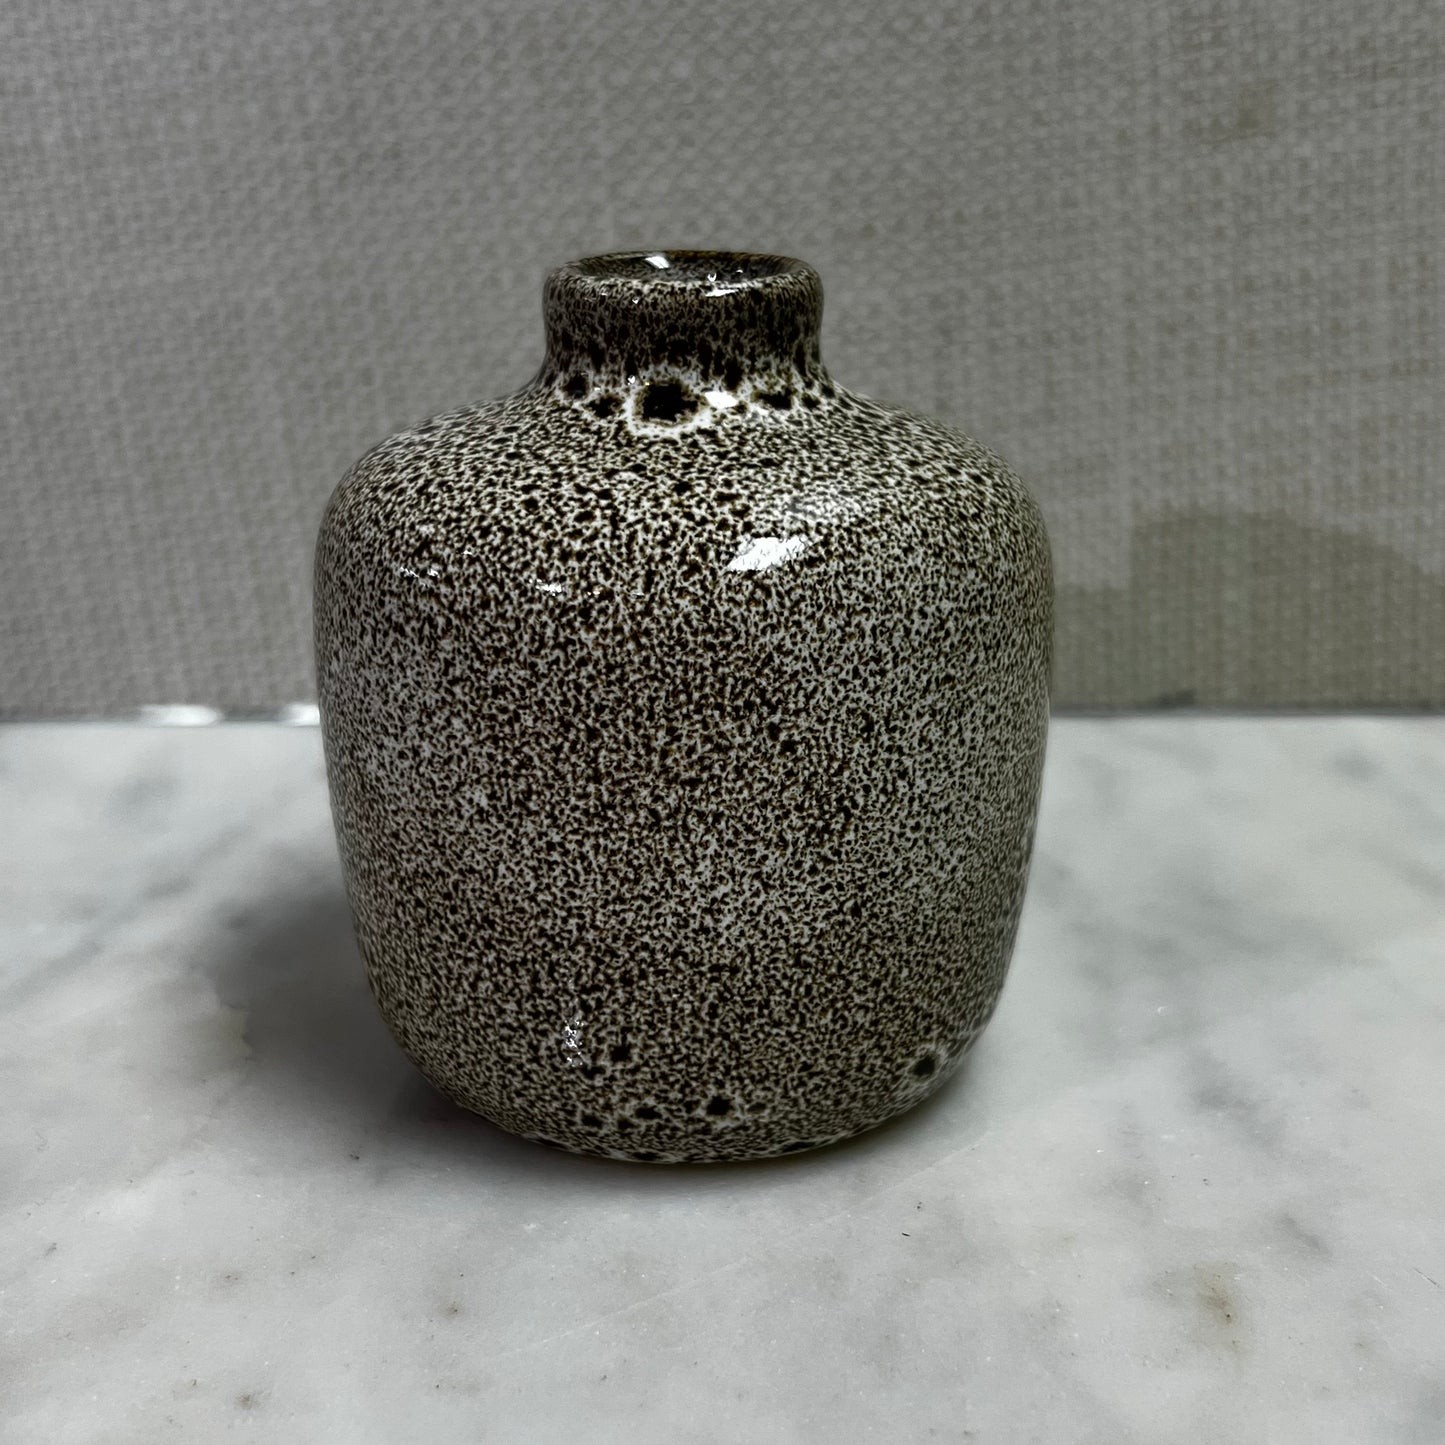 short ivory vase with brown speckled design.